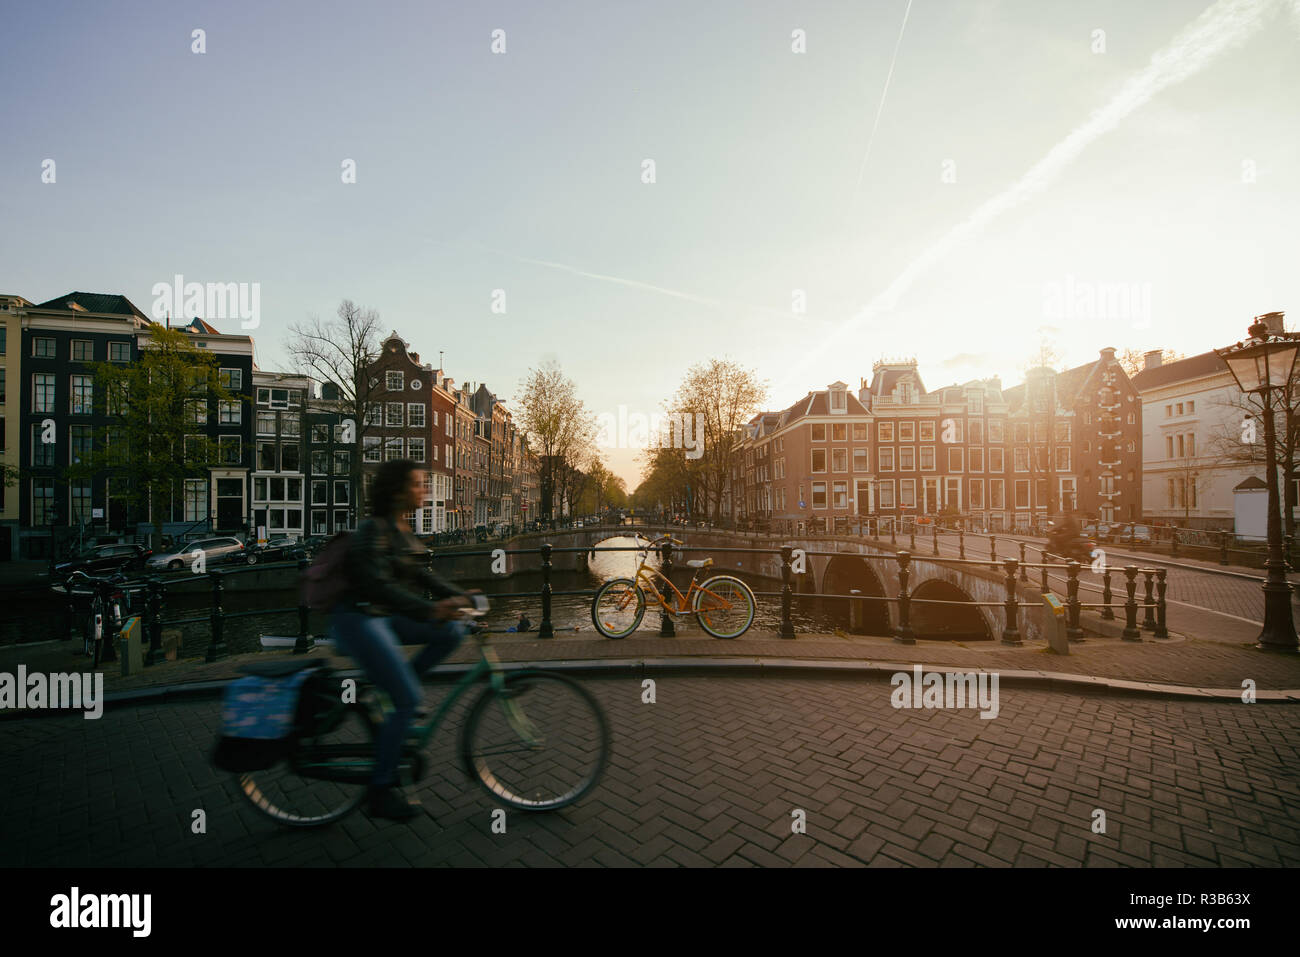 Amsterdam-Menschen auf Fahrrädern im historischen Teil in Amsterdam, Niederlande. Stockfoto